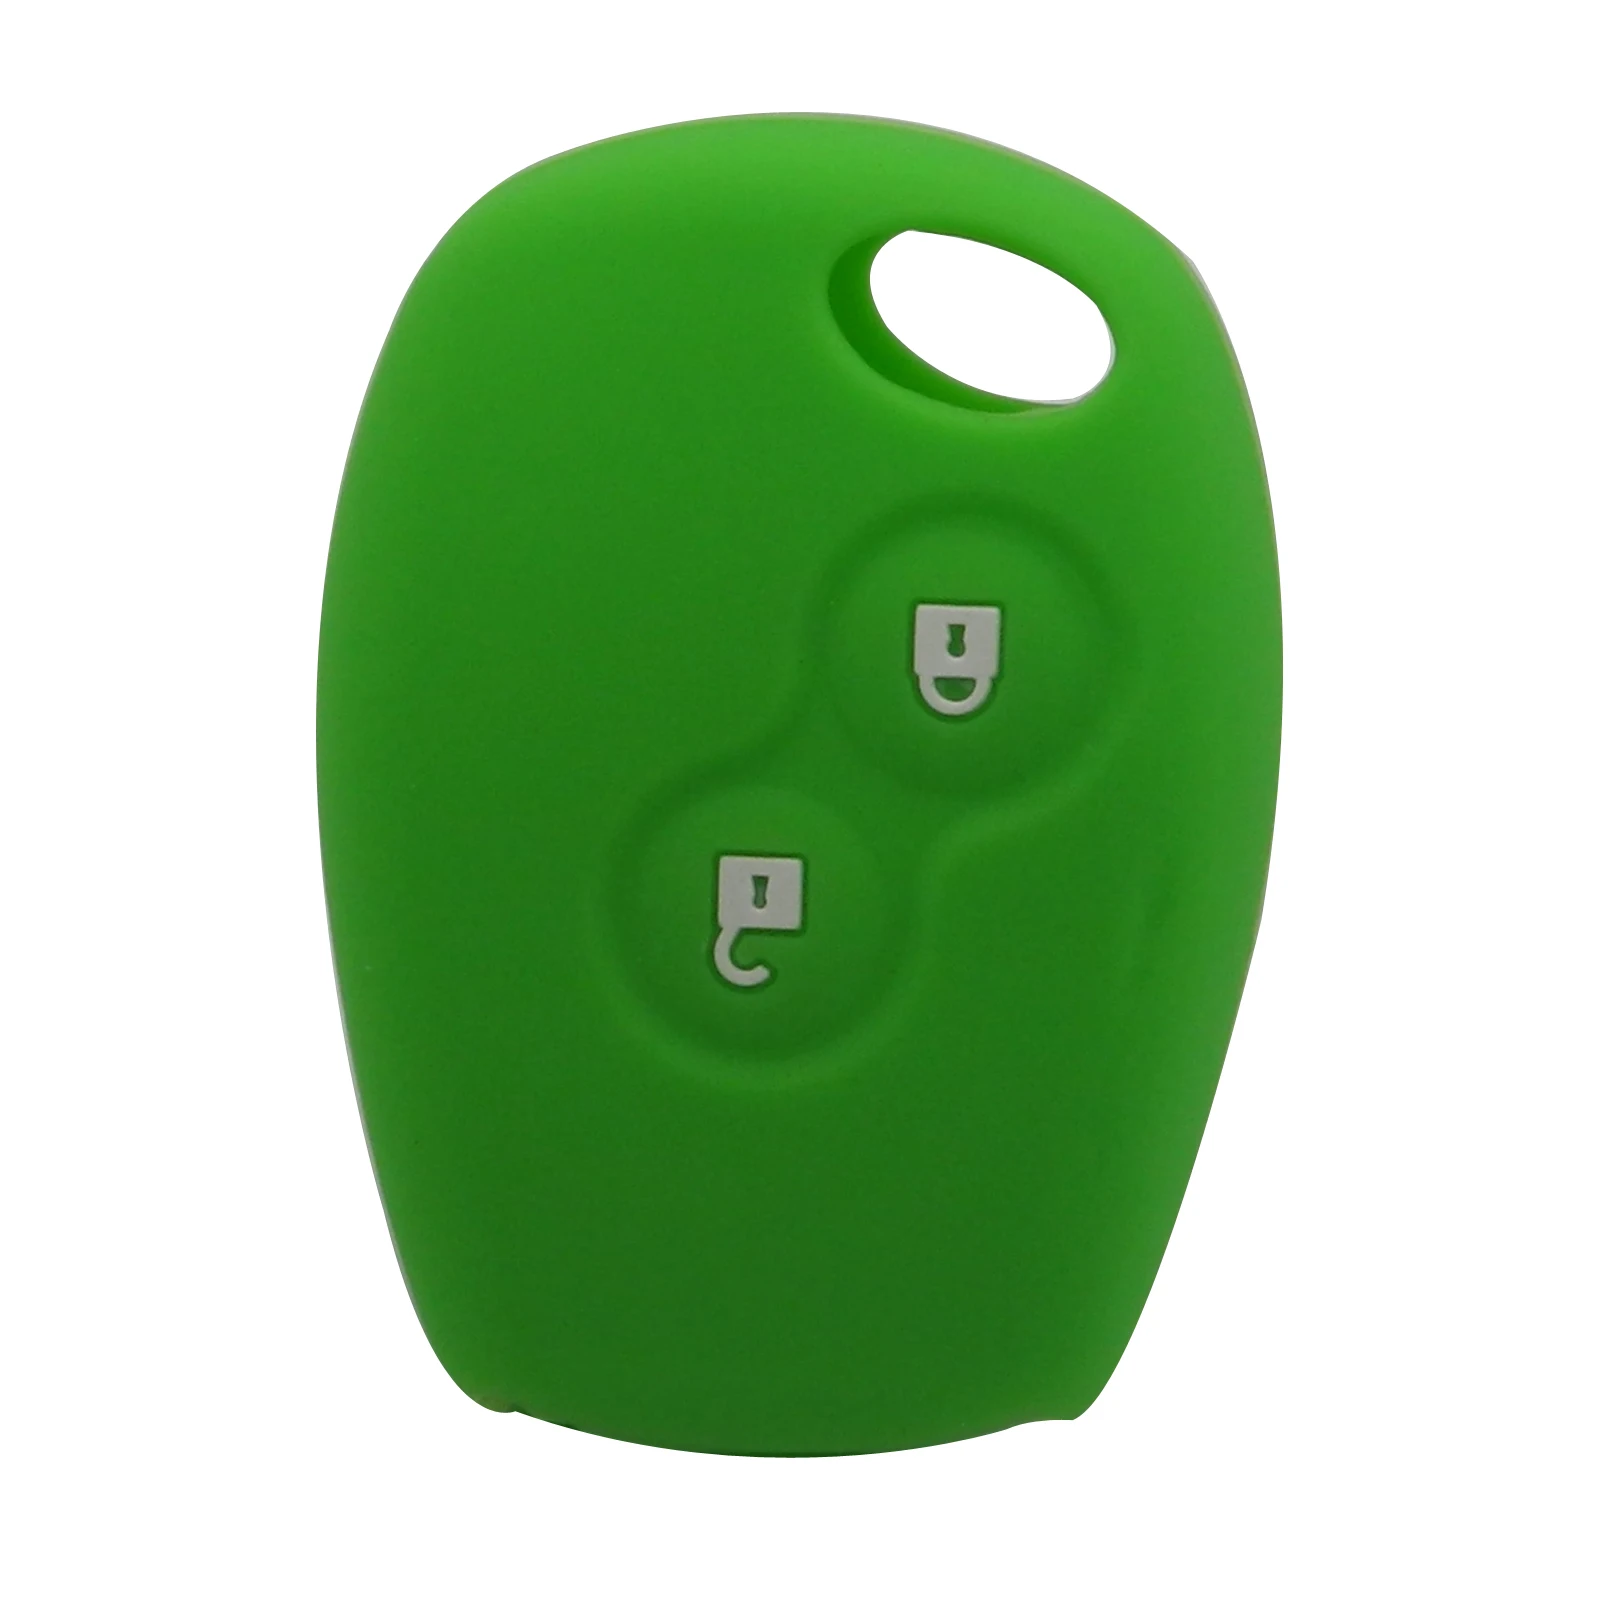 Jingyuqin пульт дистанционного управления 2 кнопки силиконовый резиновый чехол для ключей автомобиля для Renault Kangoo DACIA Scenic Megane Sandero Captur Twingo Modu - Название цвета: green